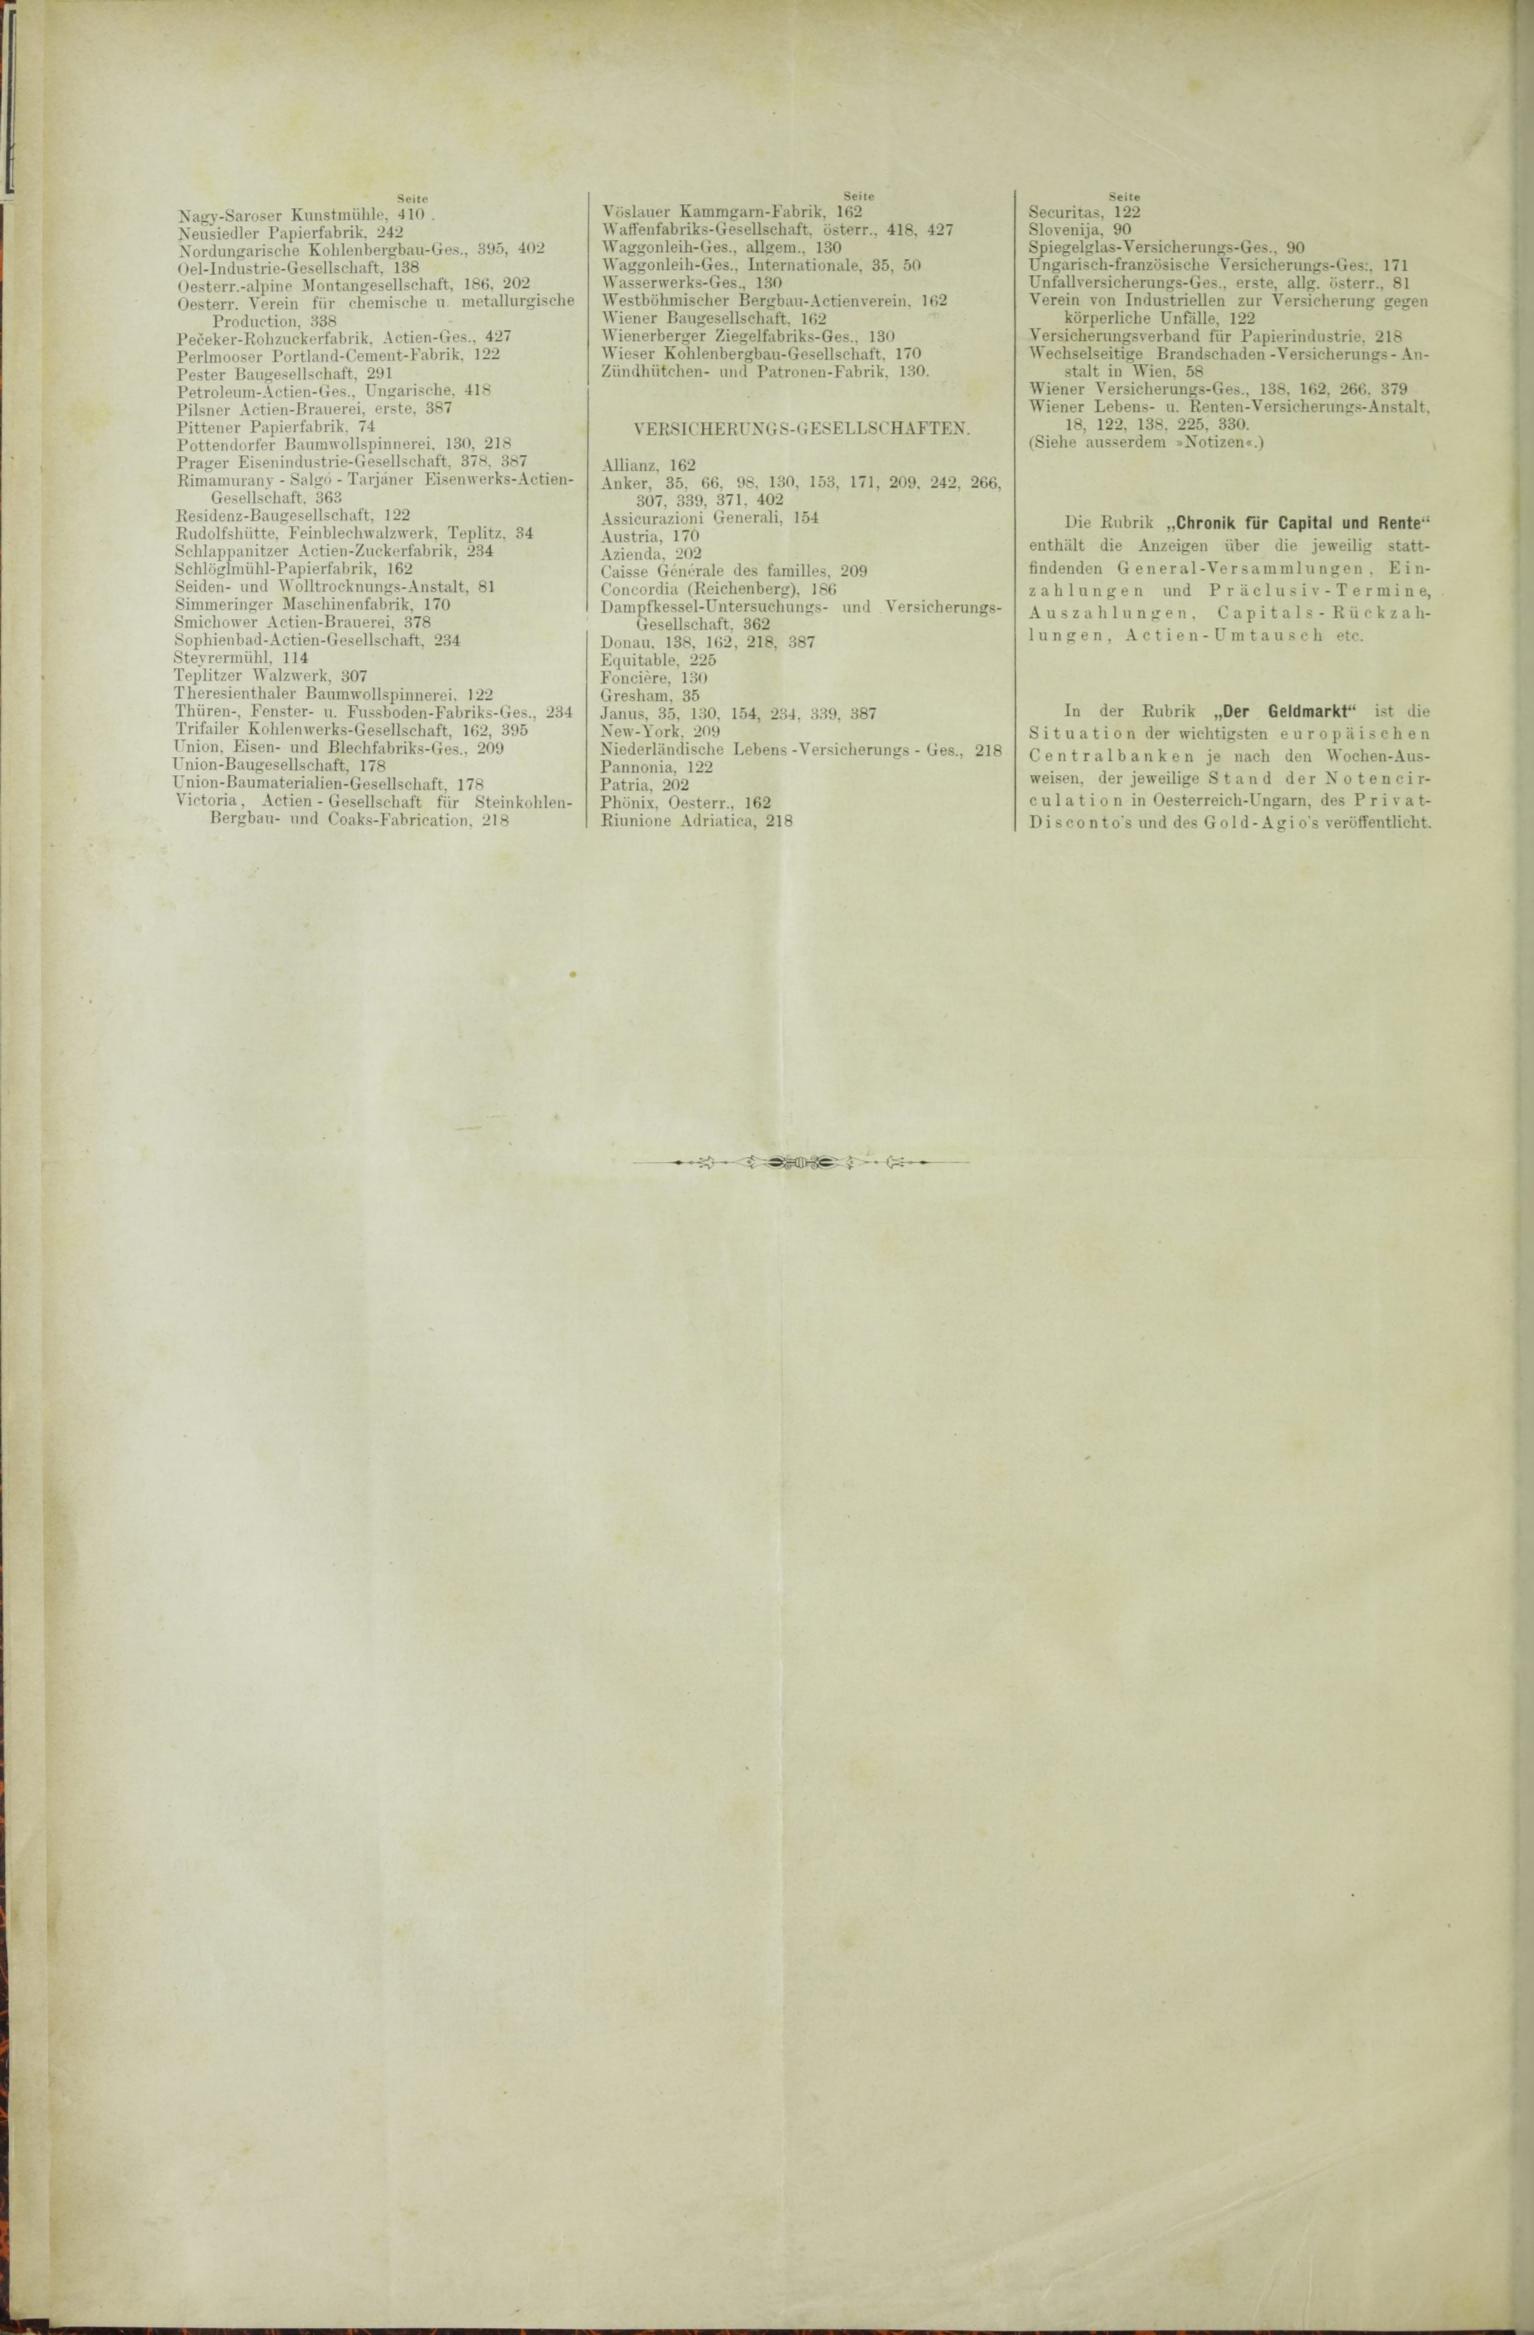 Der Tresor 12.11.1885 - Seite 12